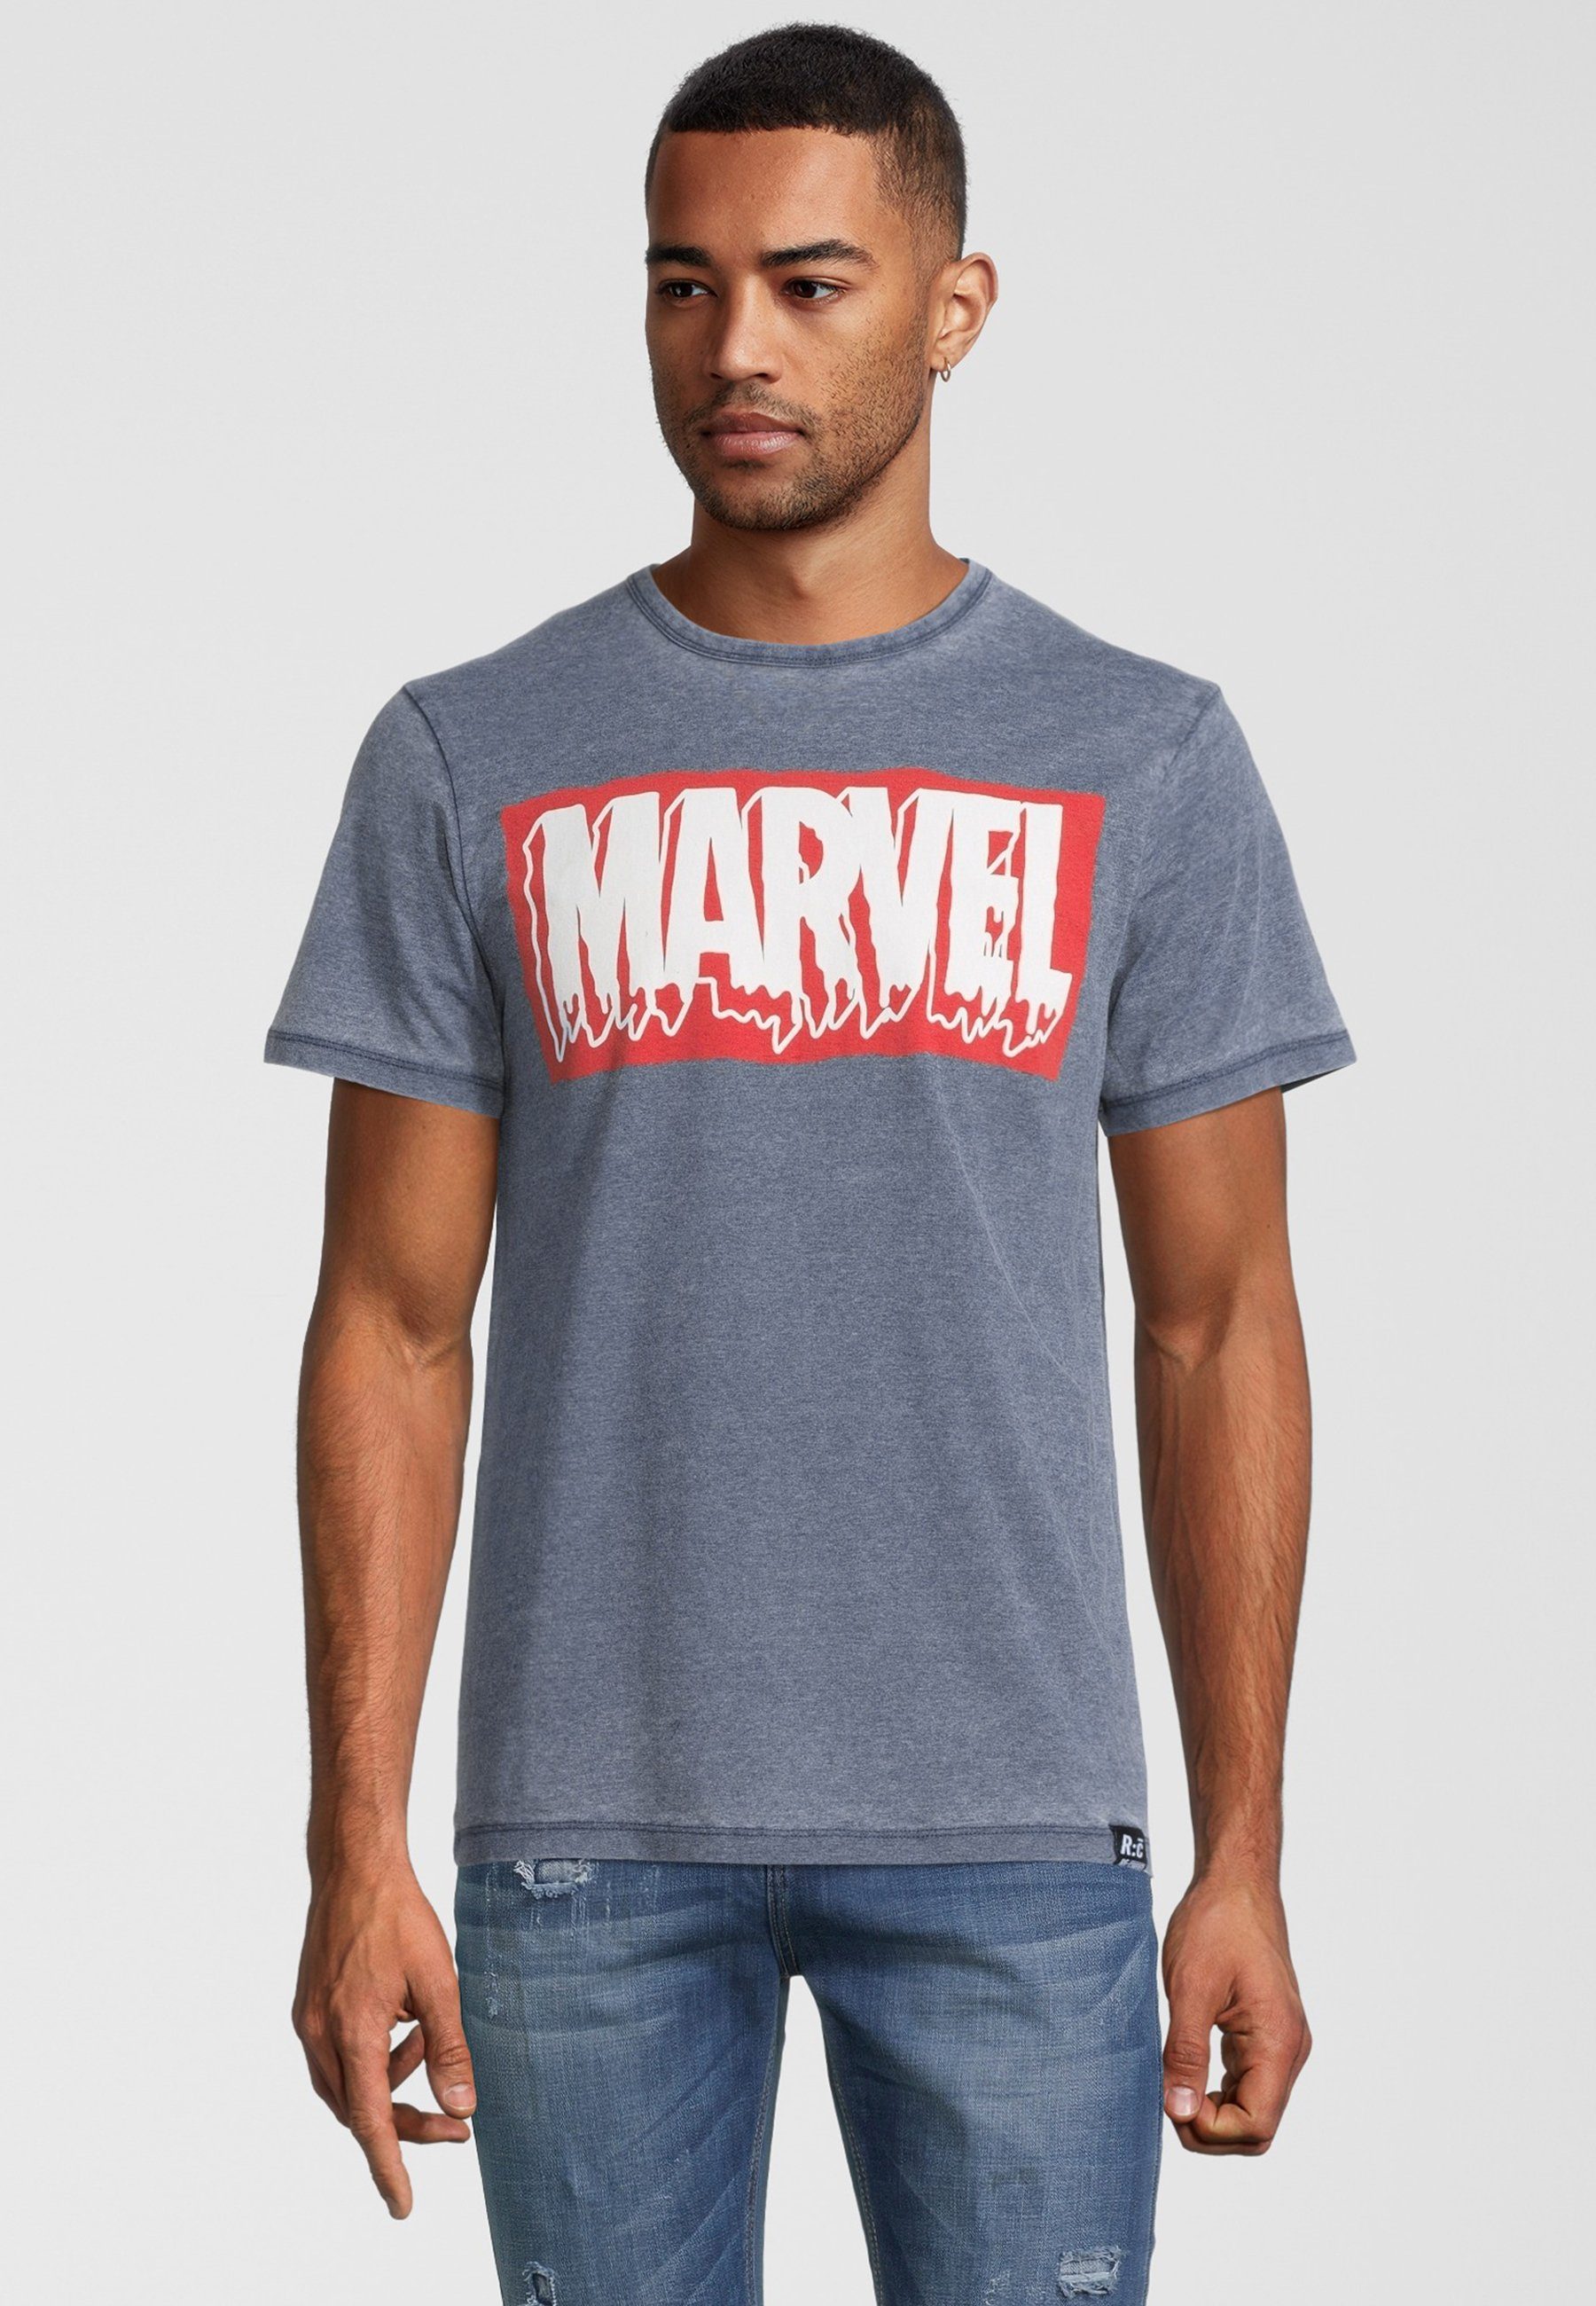 Blau Logo Recovered Slime Marvel Vintage T-Shirt